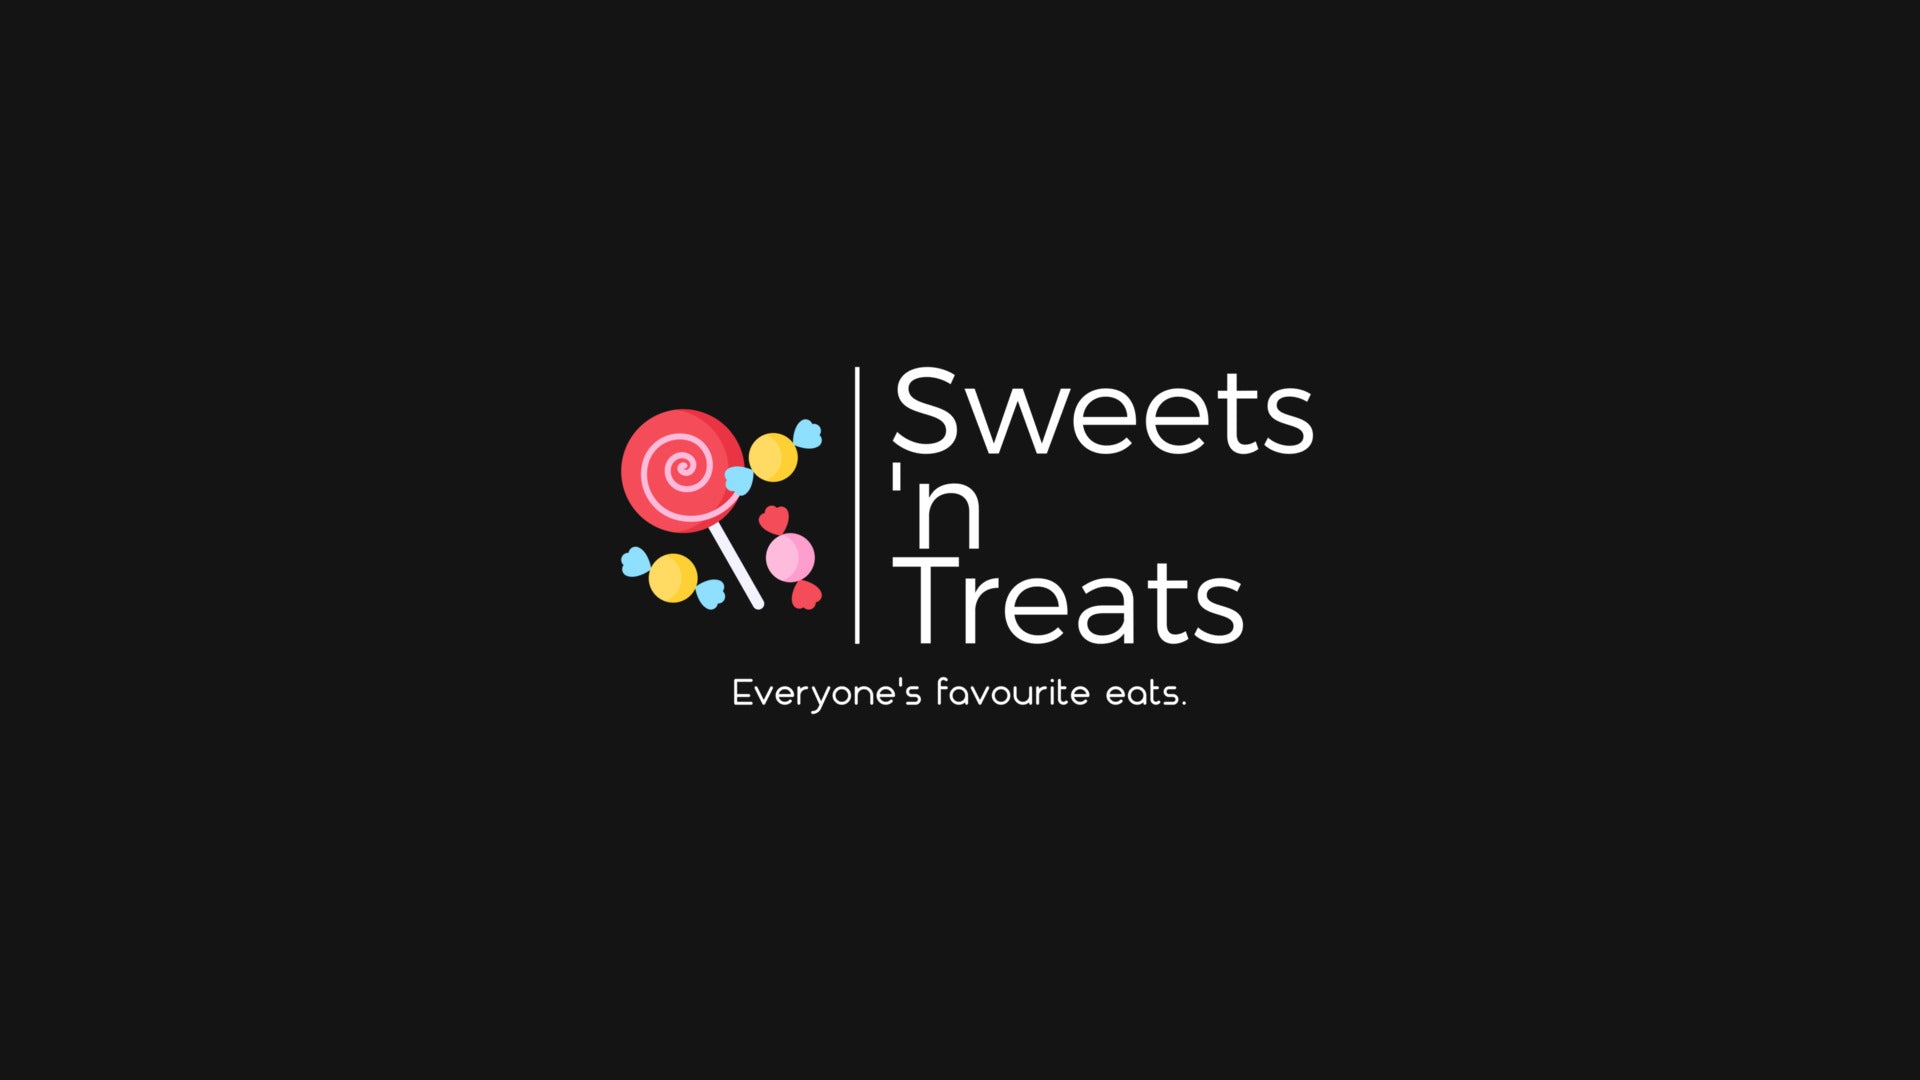 www.sweetsntreats.co.za